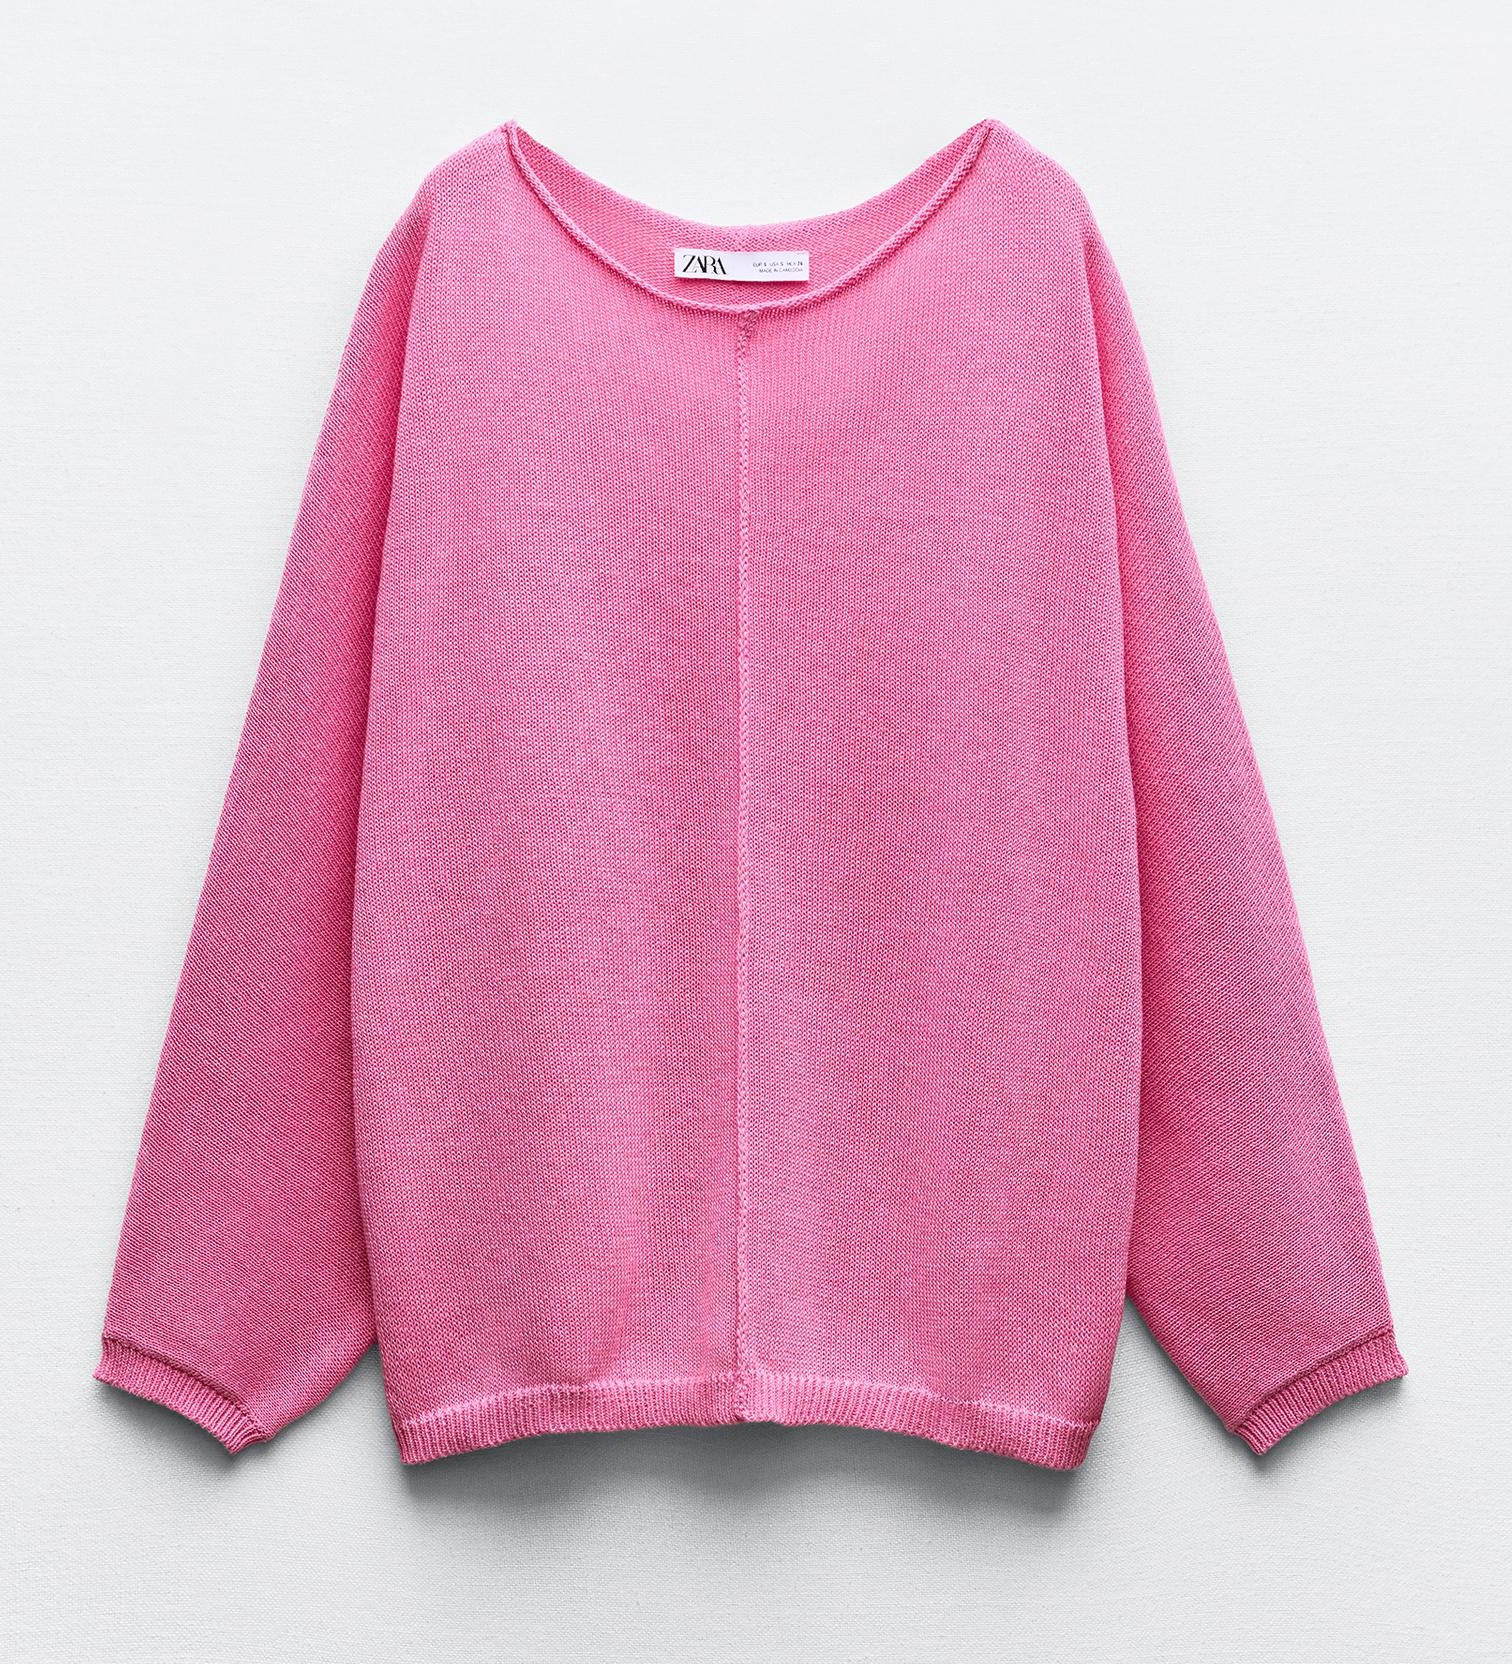 Свитер Zara Plain Knit With Central Seam, розовый свитер zara plain metallic knit серебристый